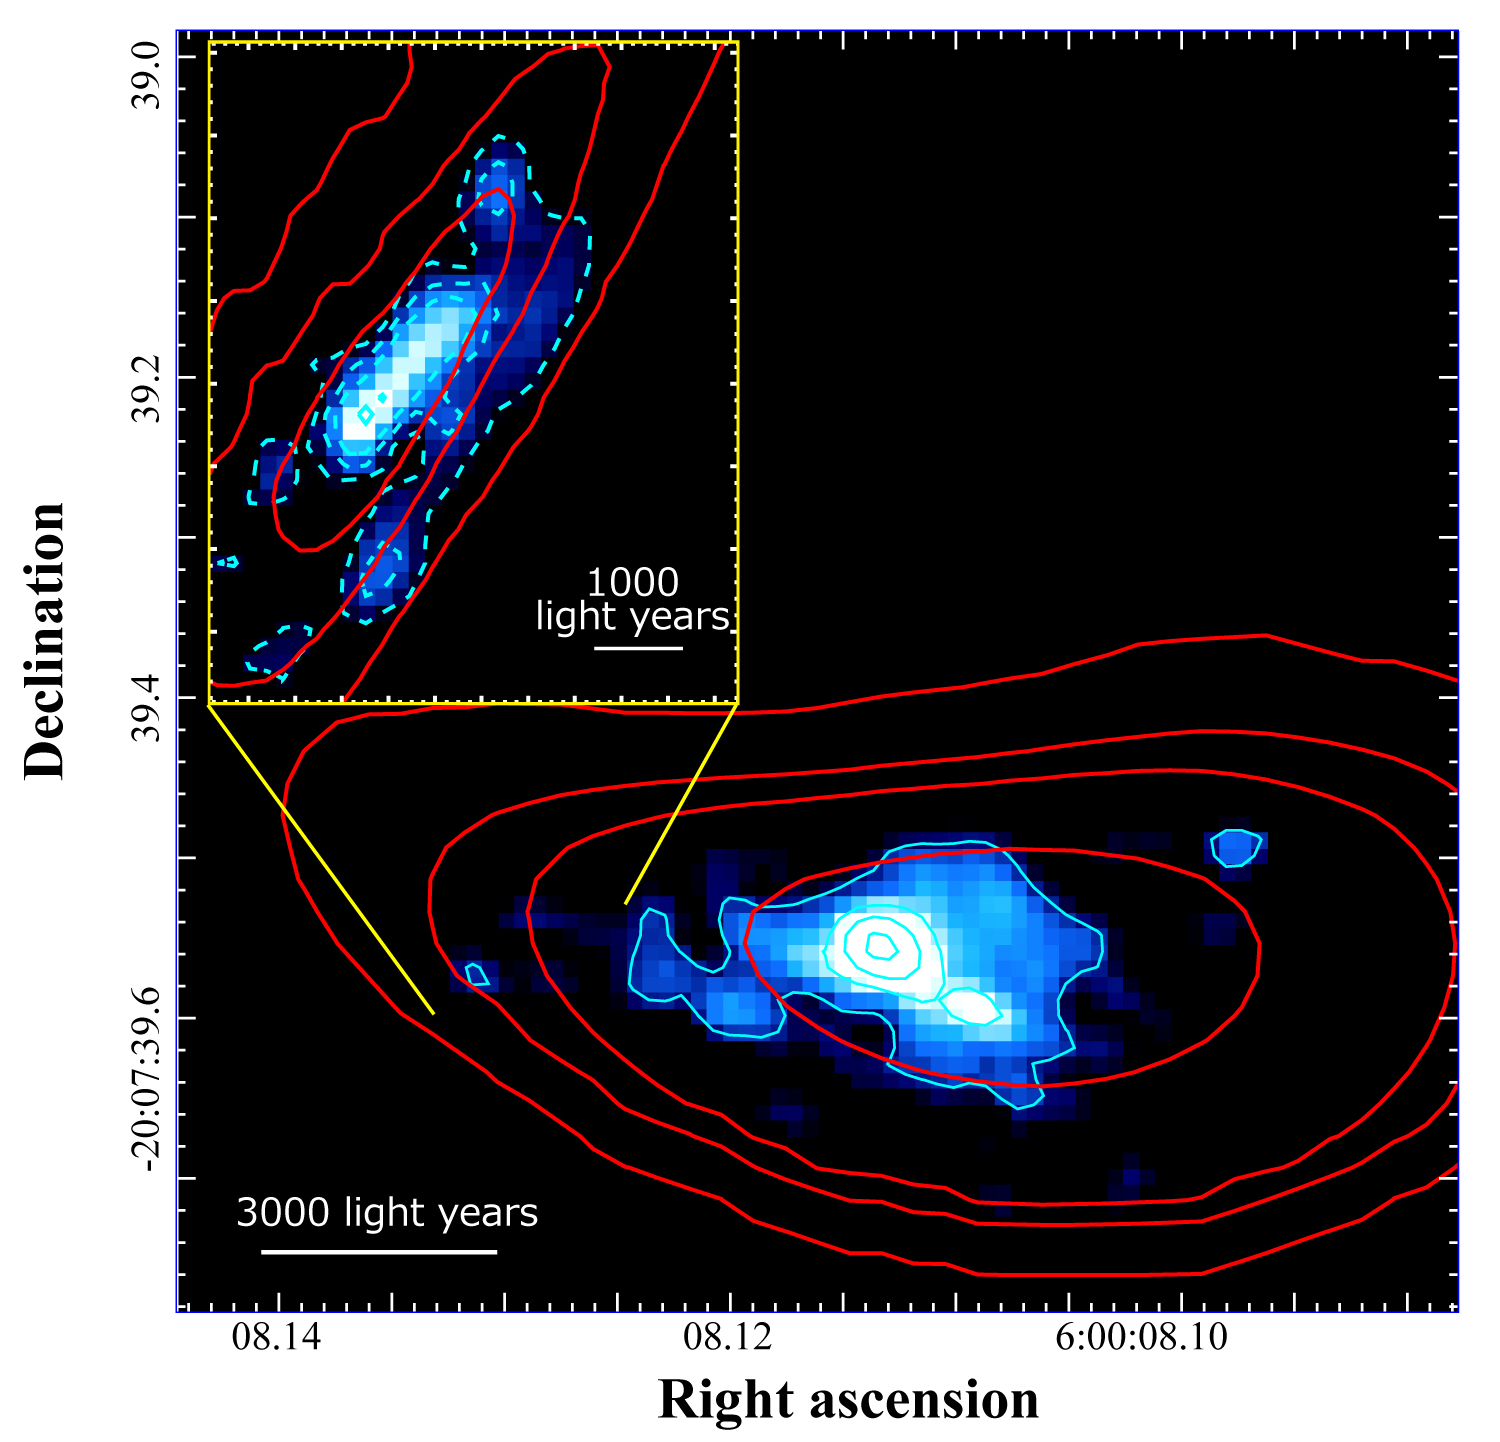 Reconstitución de la galaxia distante RXCJ0600-z6 lograda mediante la neutralización del efecto de lente gravitacional causado por el cúmulo de galaxias. Los contornos rojos muestran la distribución de las ondas de radio emitidas por iones de carbono captadas por ALMA, mientras que los contornos azules muestran la distribución de la luz captada por el telescopio espacial Hubble. La línea crítica, donde la intensidad de la luz presenta su nivel máximo de amplificación por efecto del lente gravitacional, recorre el costado izquierdo de la galaxia, lo cual significa que esa parte de la galaxia es la más amplificada (imagen del recuadro). Créditos: ALMA (ESO/NAOJ/NRAO), Fujimoto et al., telescopio espacial Hubble de la NASA/ESA